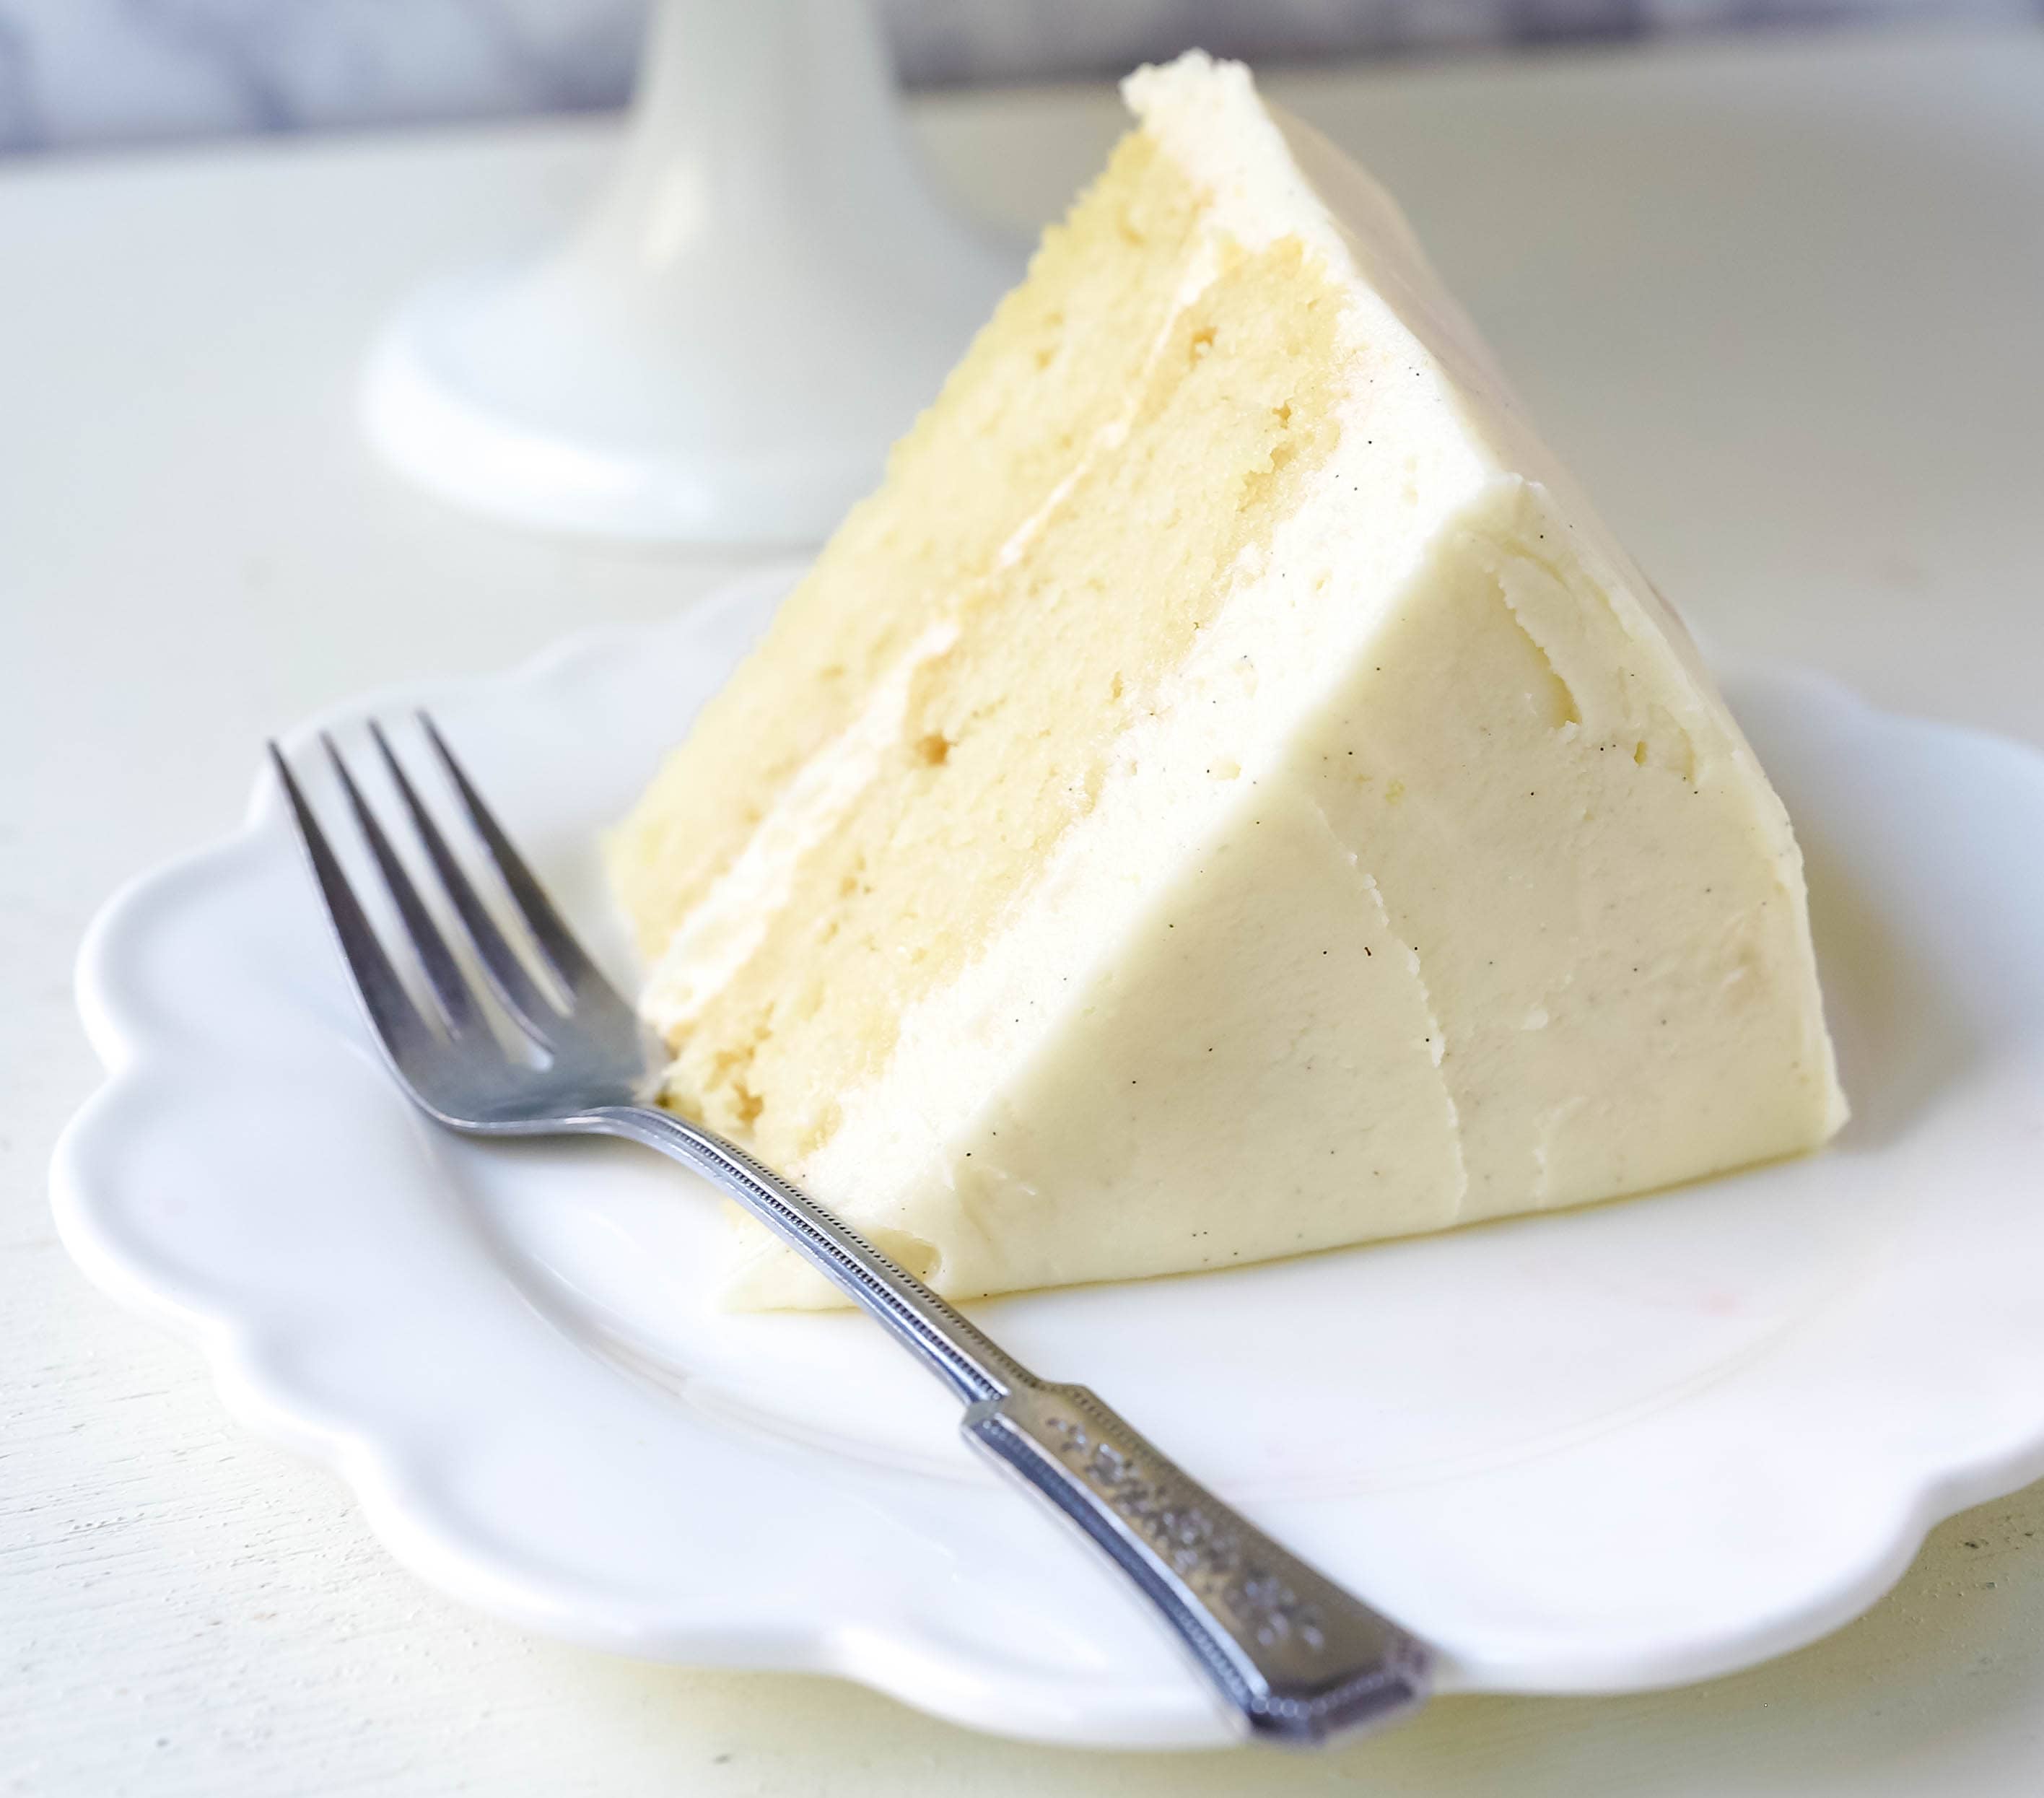 Vanilla Cake Recipe. The best homemade vanilla cake recipe with vanilla bean buttercream frosting. www.modernhoney.com #vanillacake #cake #cakerecipe #vanillacakerecipe